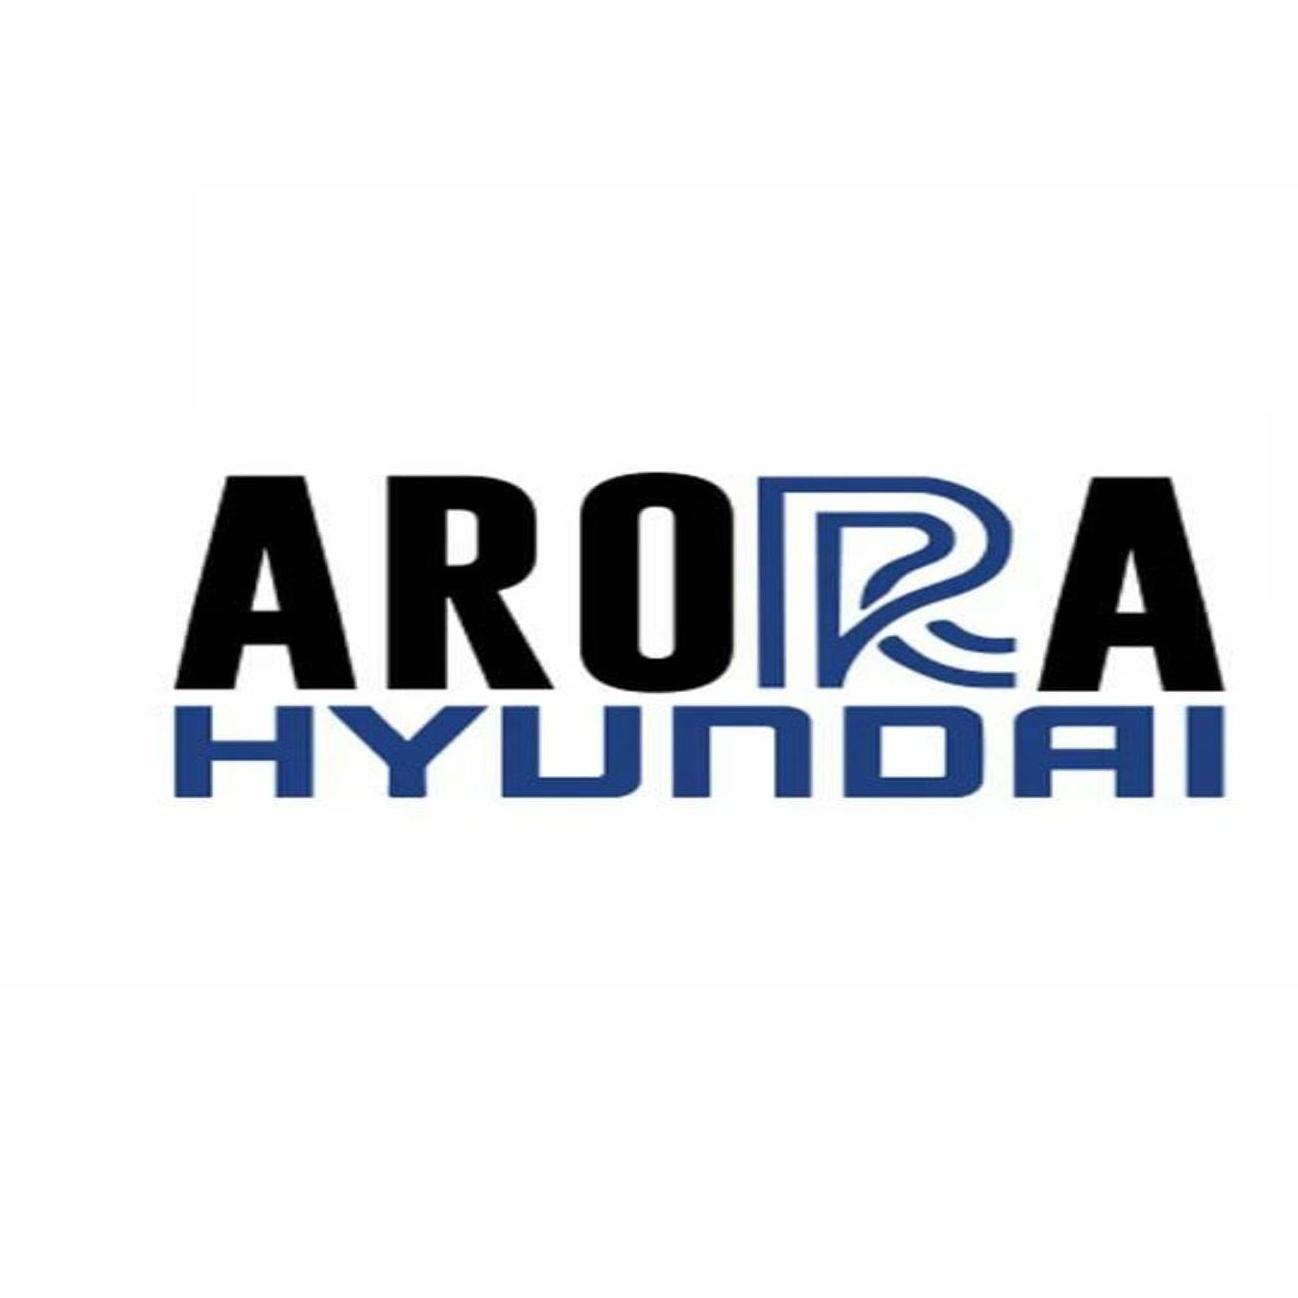 Arora Hyundai